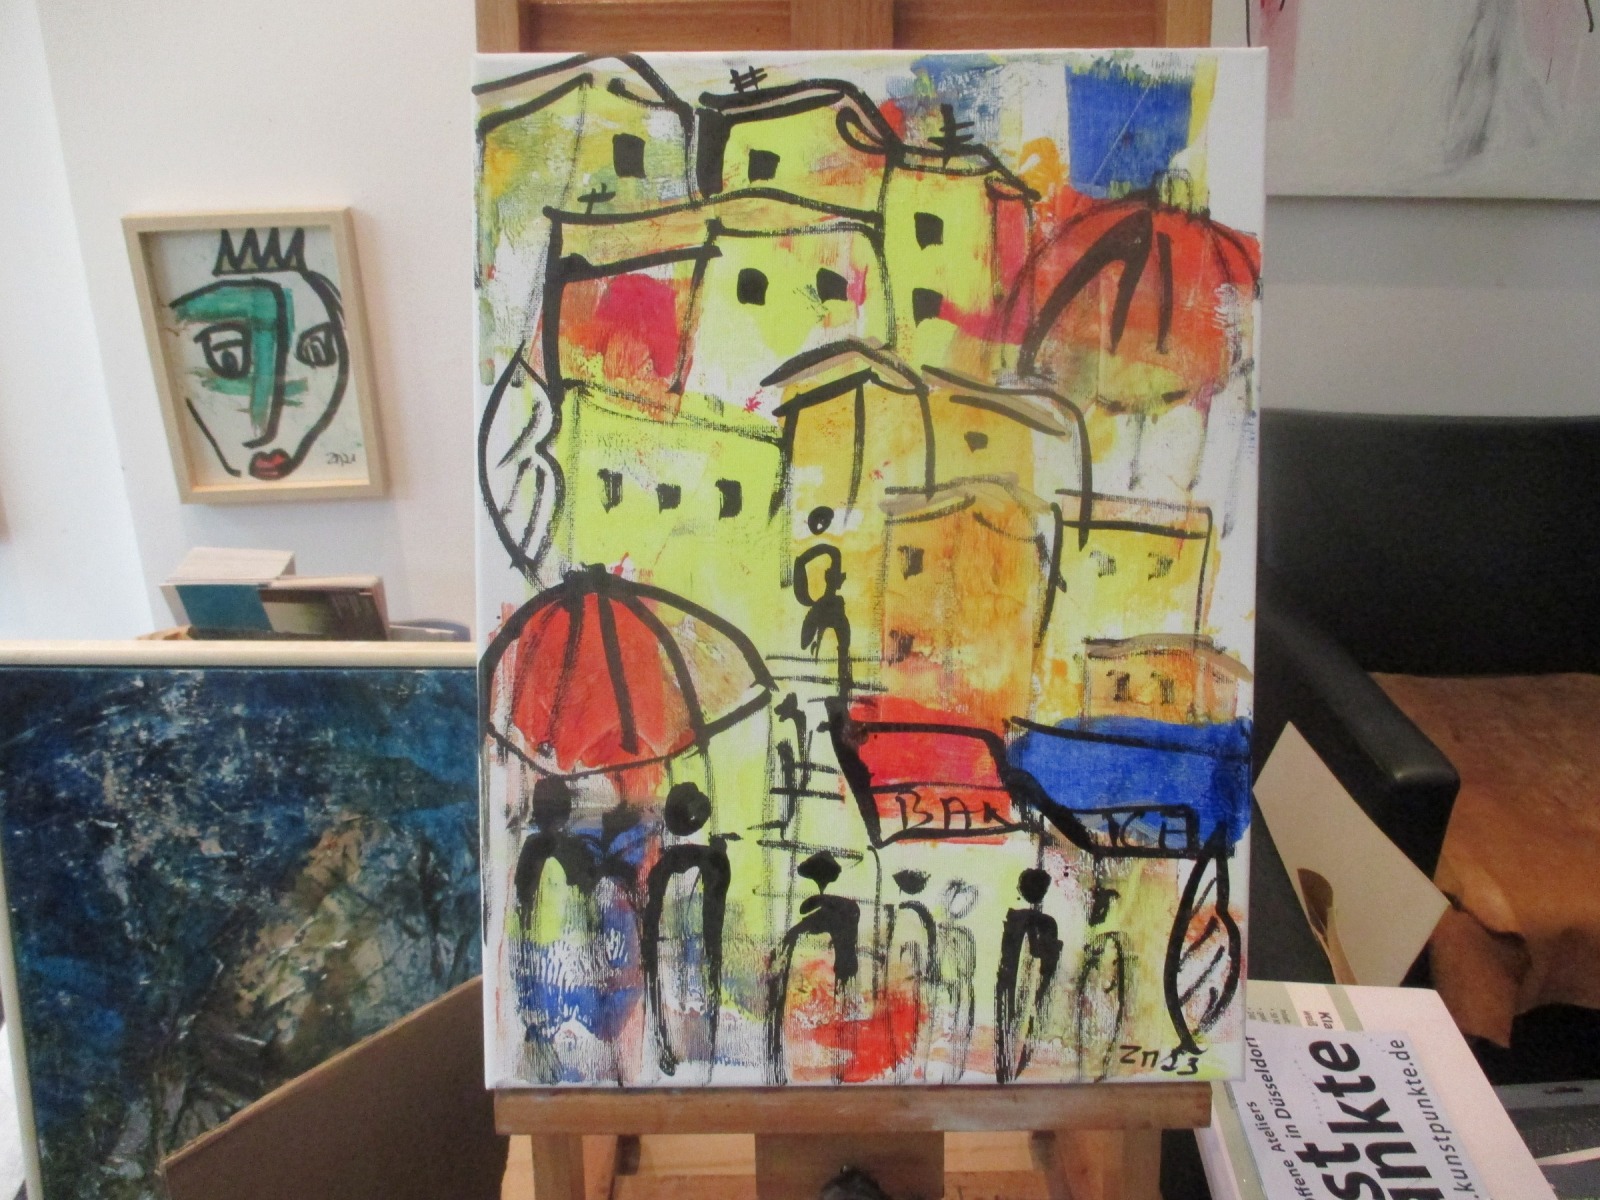 die Farben Italiens mit Kuppel expressive Häuser mit Menschen, expressive Malerei 40x30 4